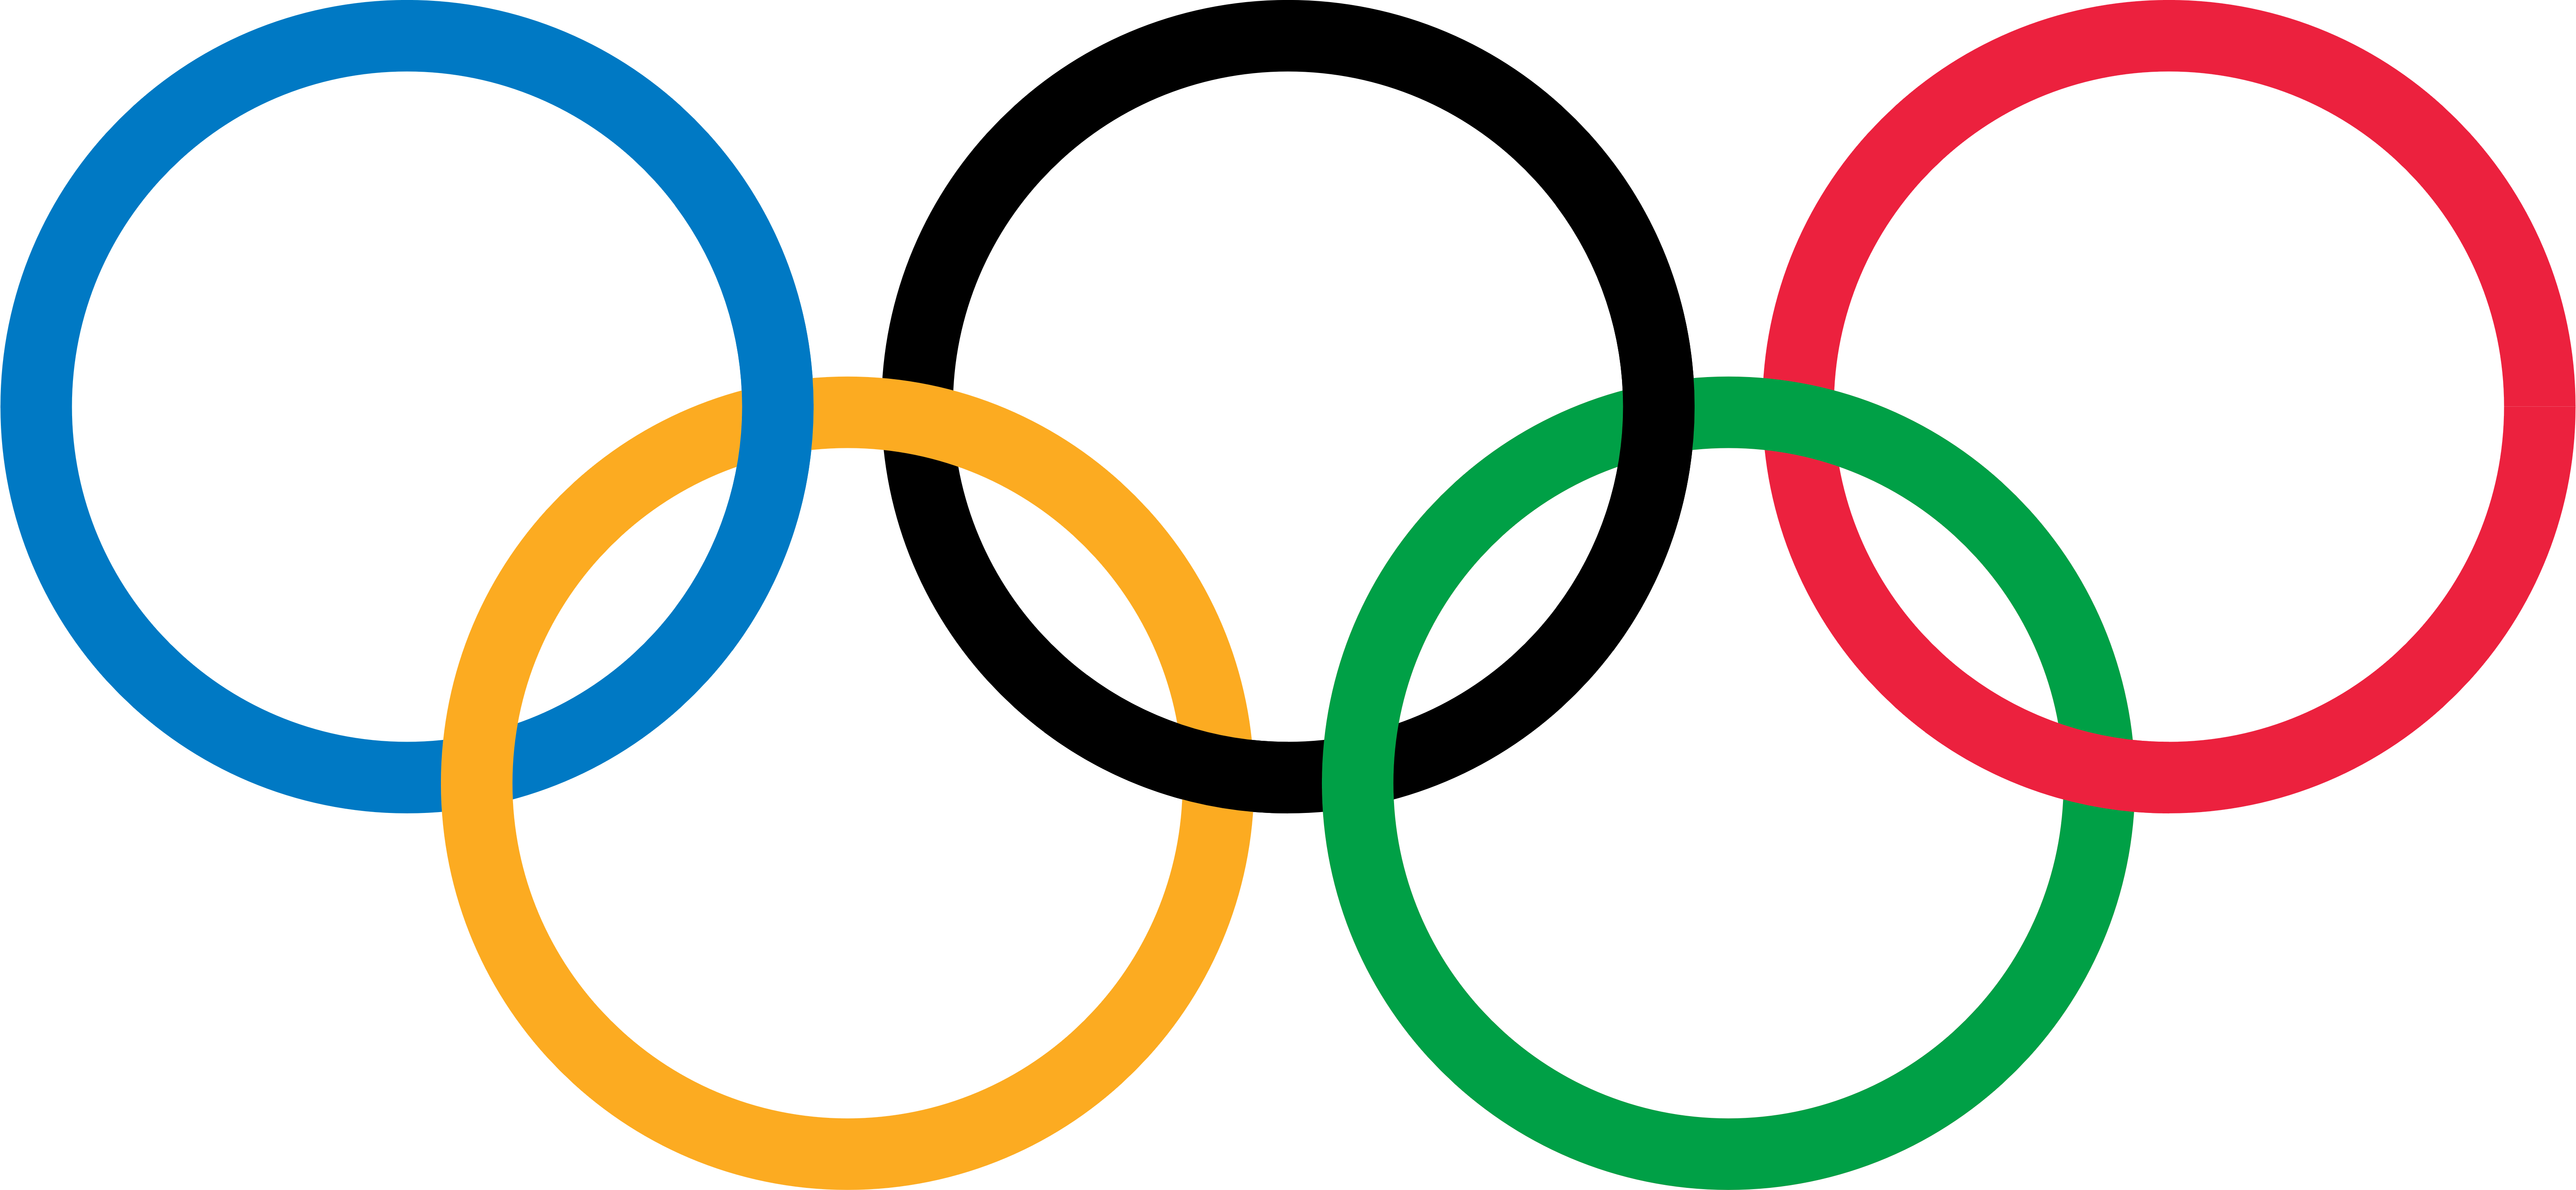 Os anéis olímpicos